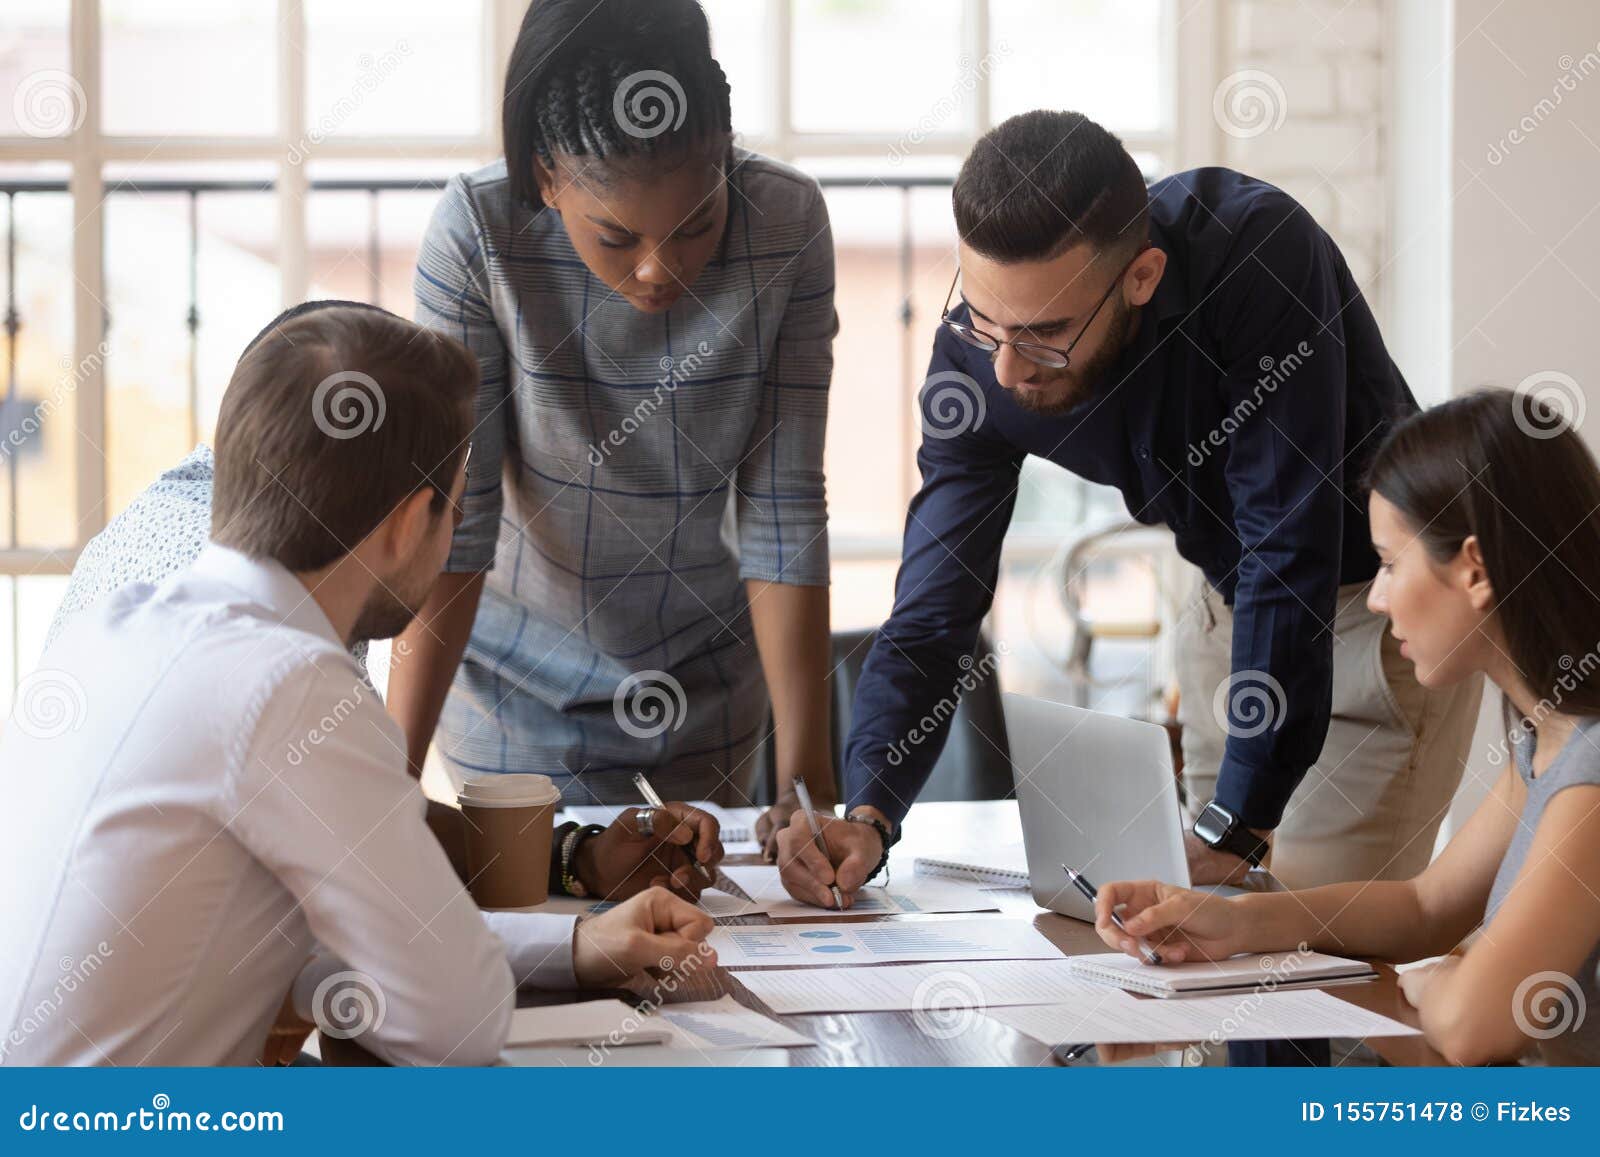 focused multiracial corporate business team people brainstorm on paperwork